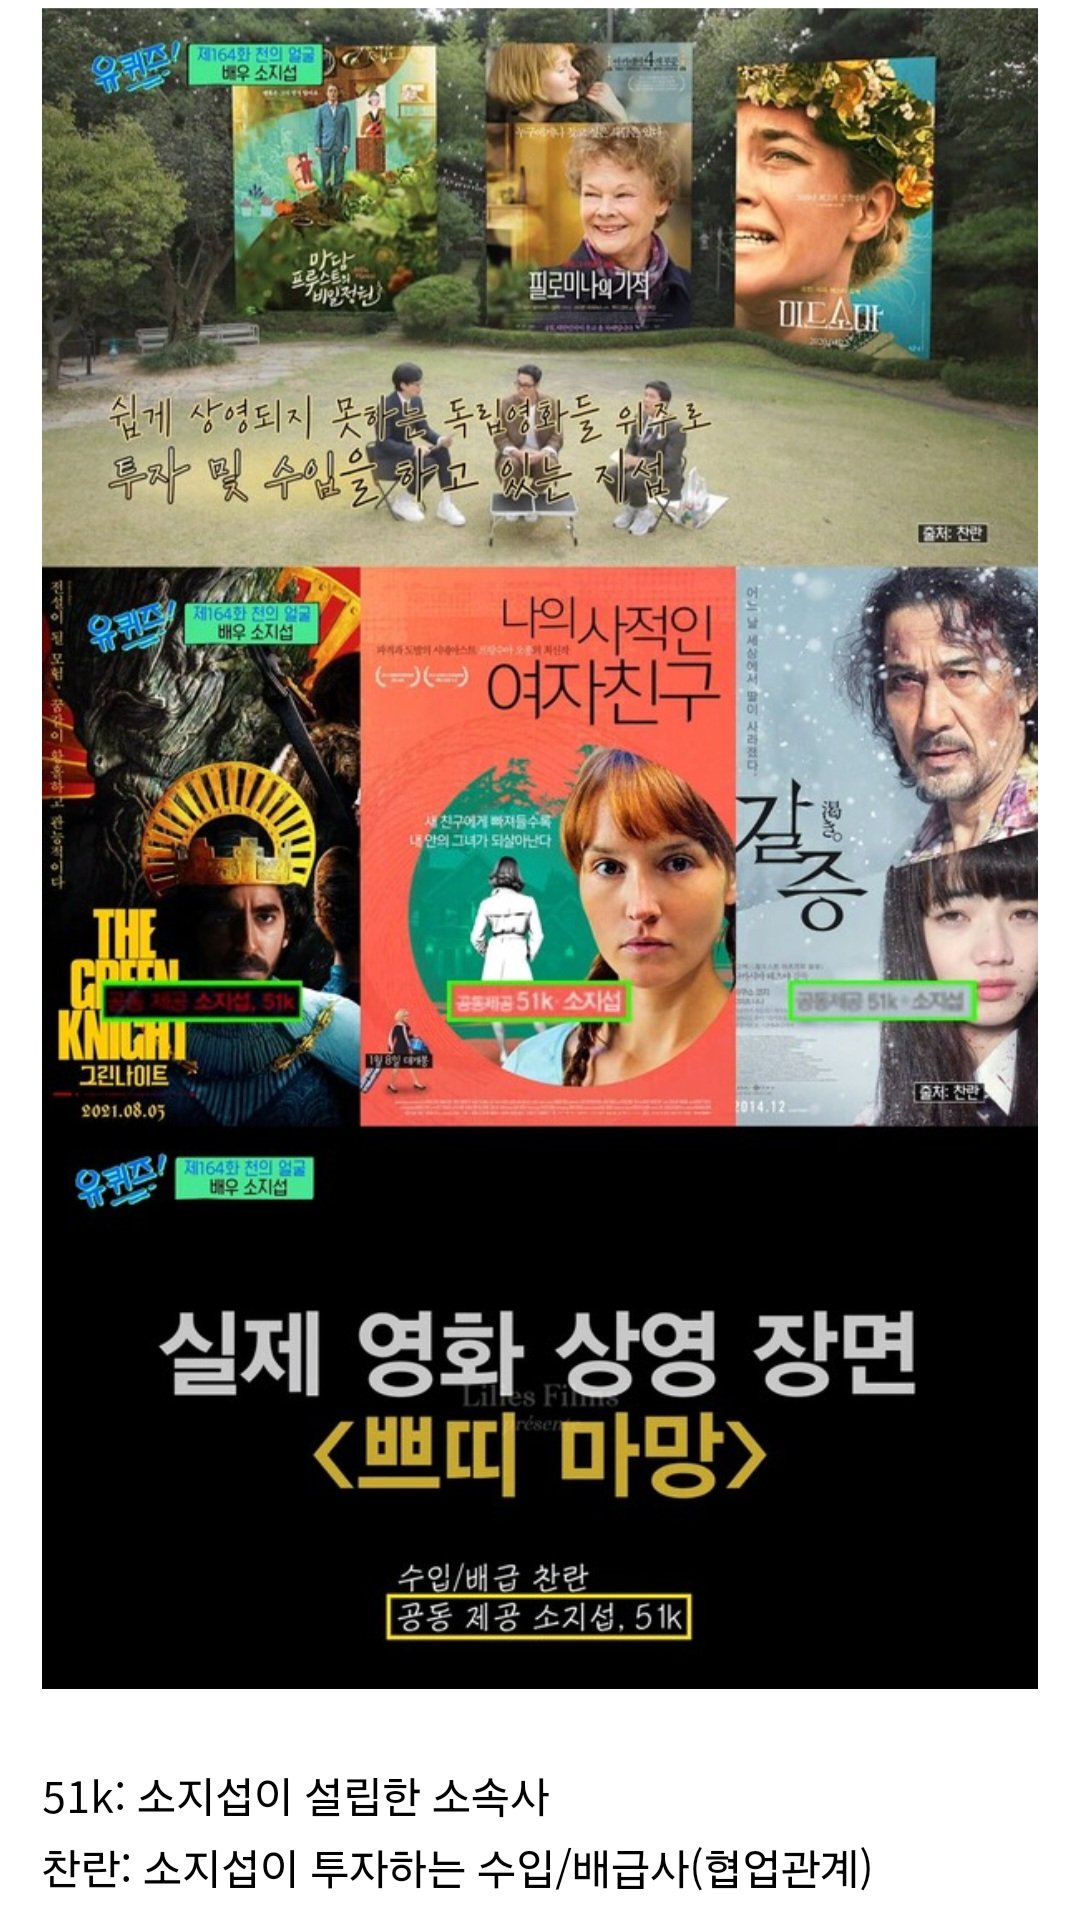 한국의 영화 마니아들이 소지섭에게 큰 신세 지고 있는 이유